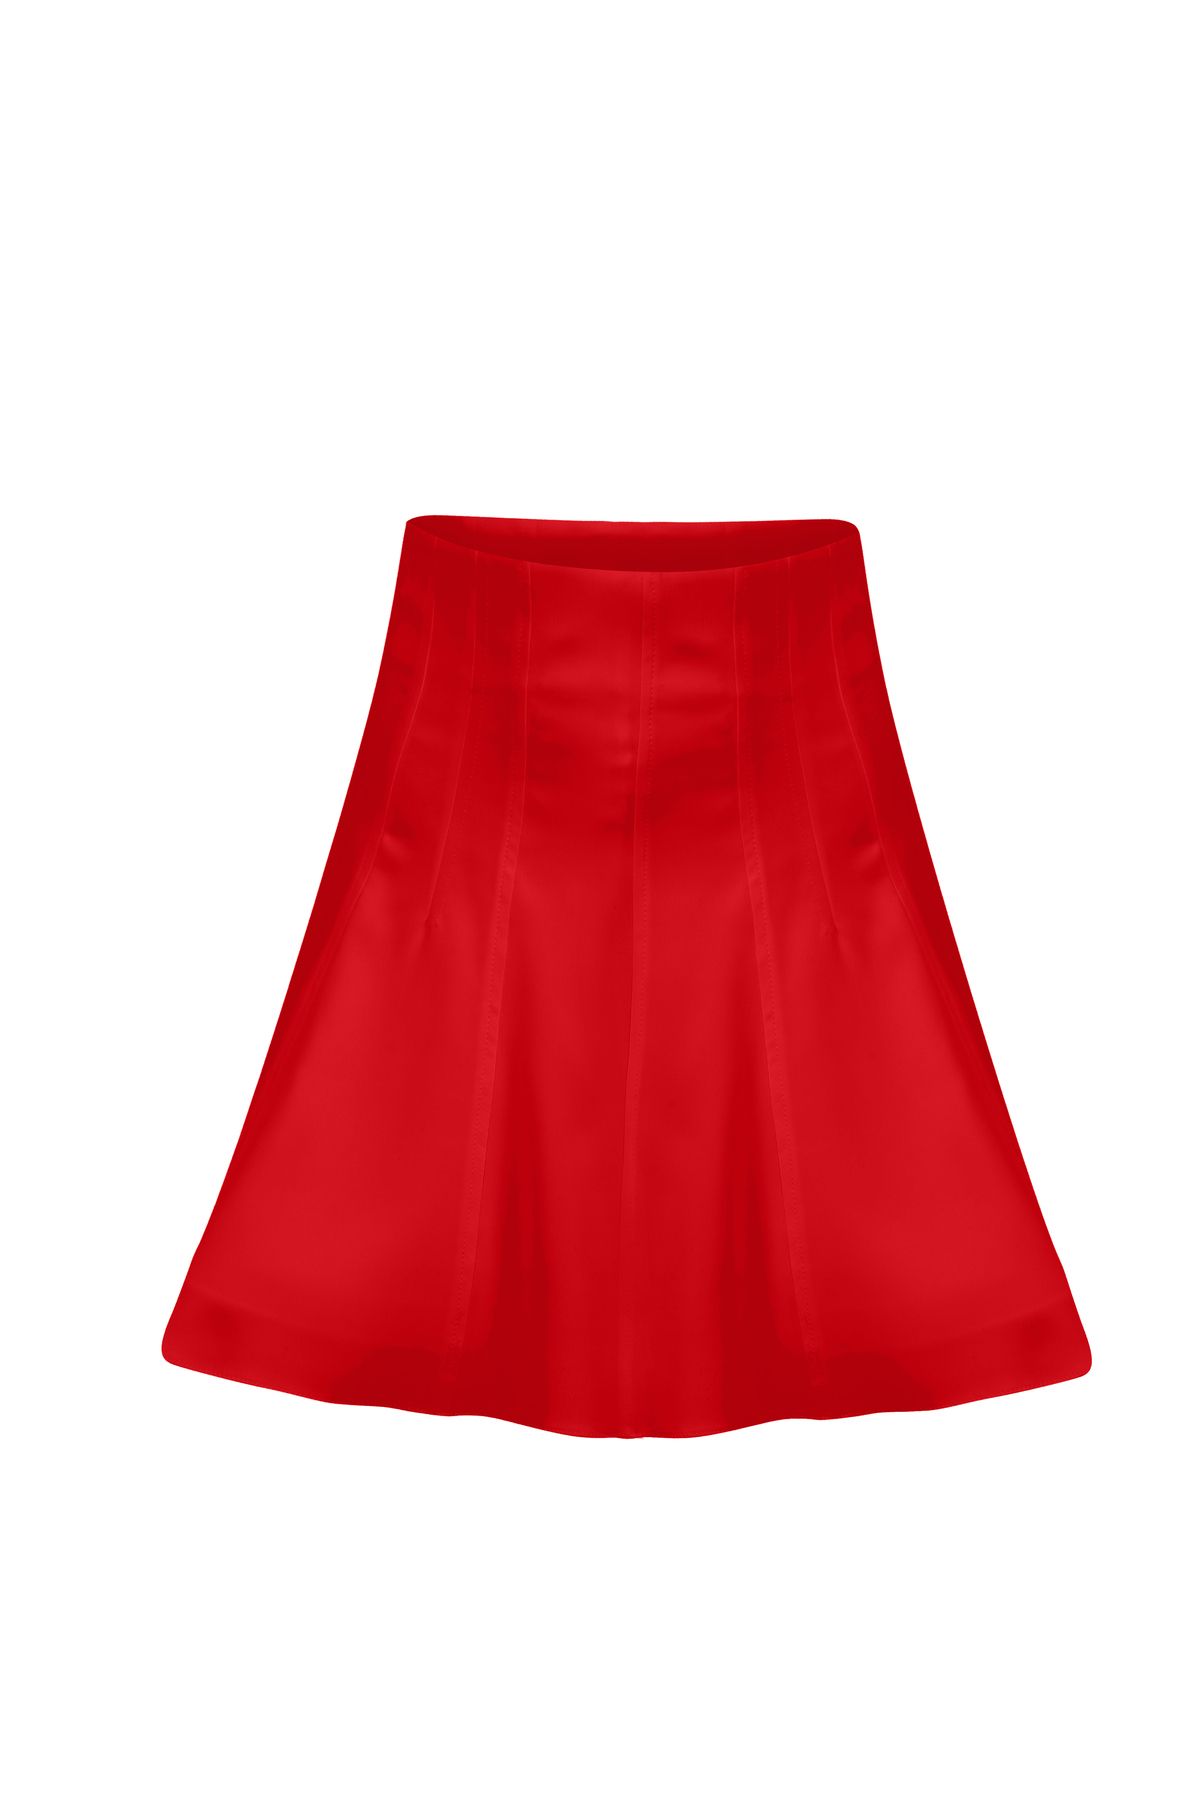 Rheme And Fons Özel Tasarım Couture El Işçiliği Kırmızı Mini Etek